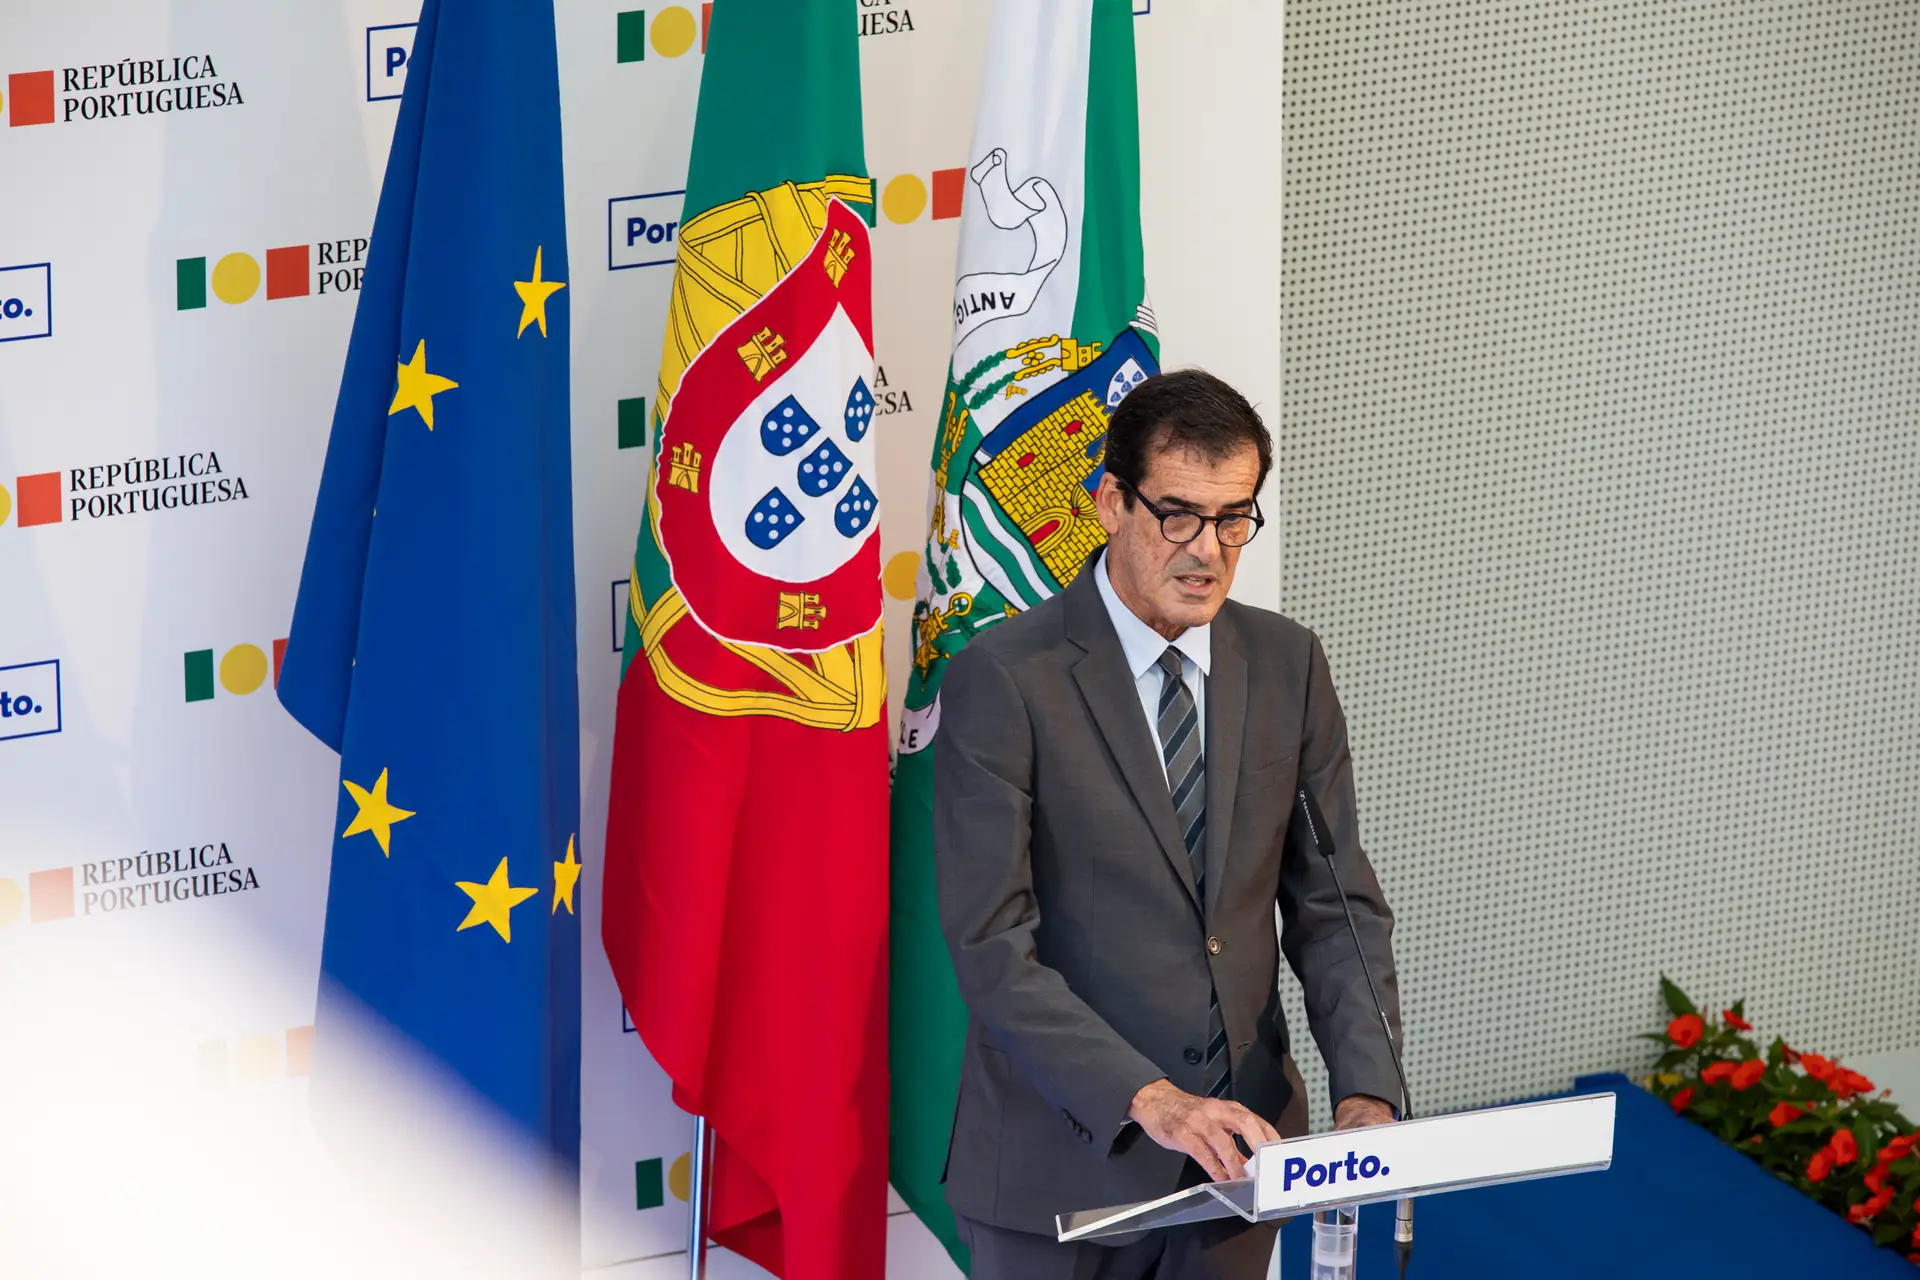 Agressões no Porto: Rui Moreira diz que “nada justifica” e pede extinção da AIMA